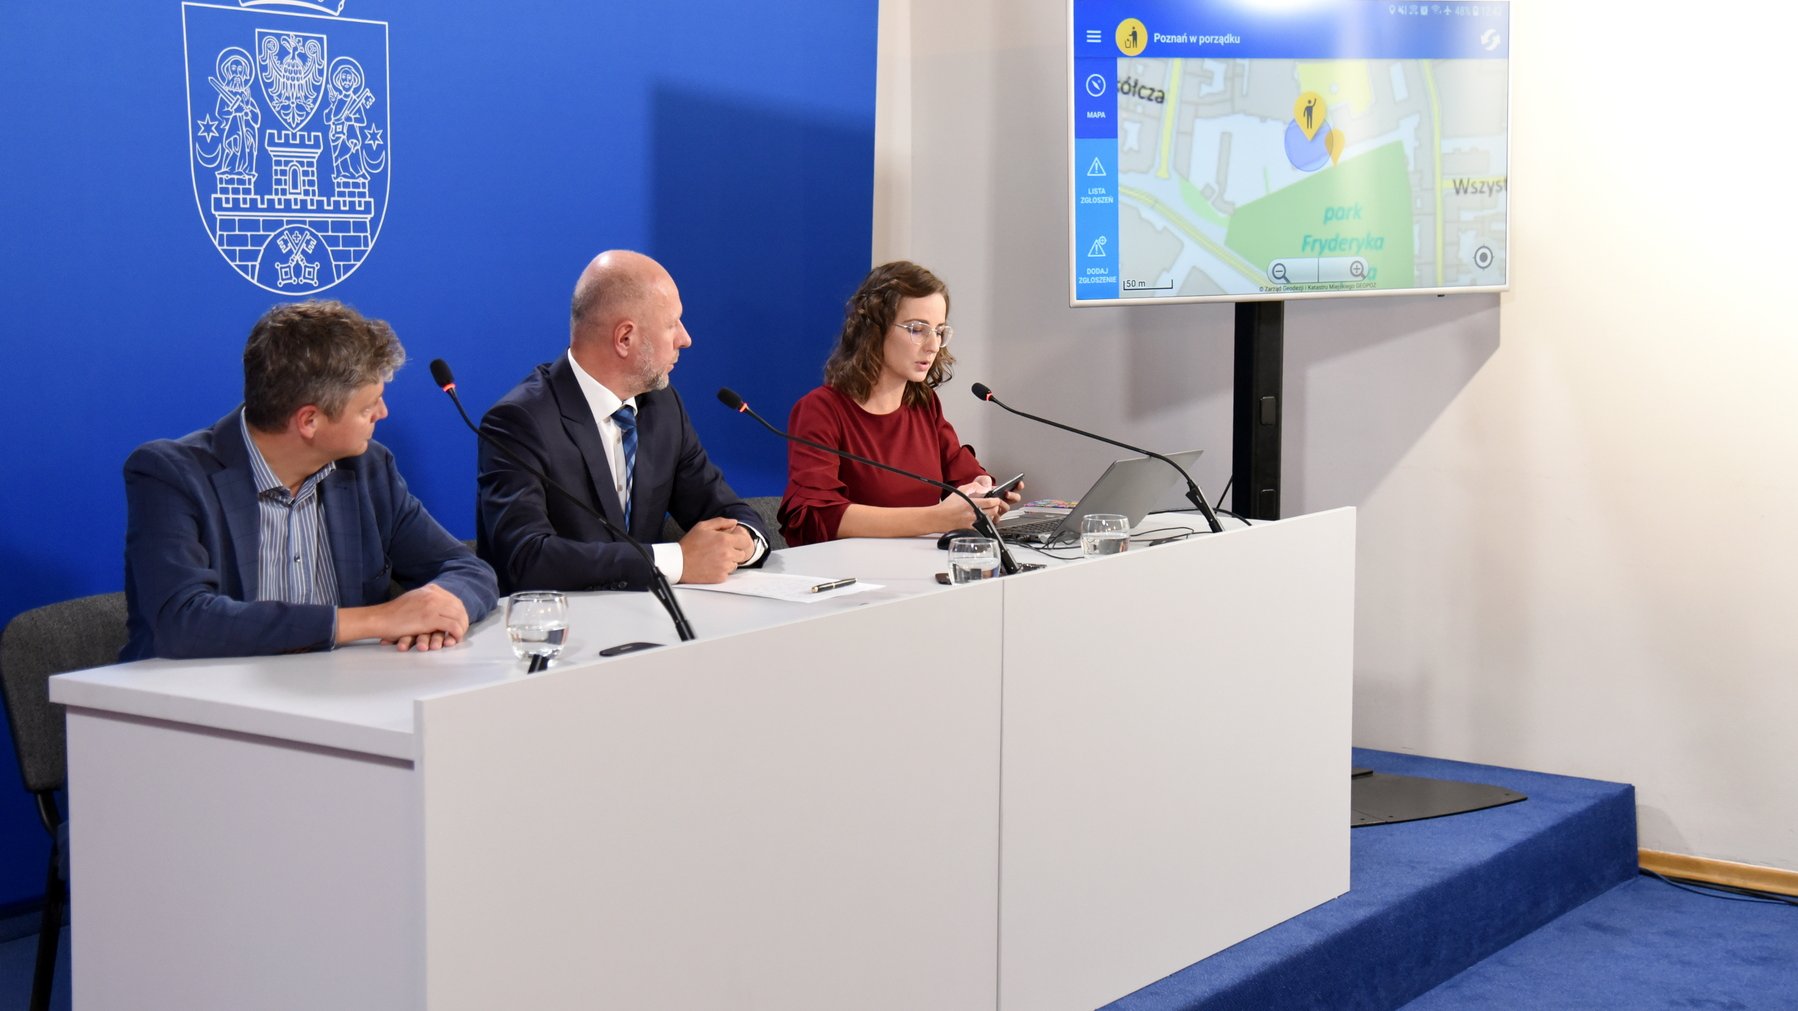 Możliwości aplikacji "Poznań w porządku" zaprezentowano podczas konferencji prasowej w UMP.